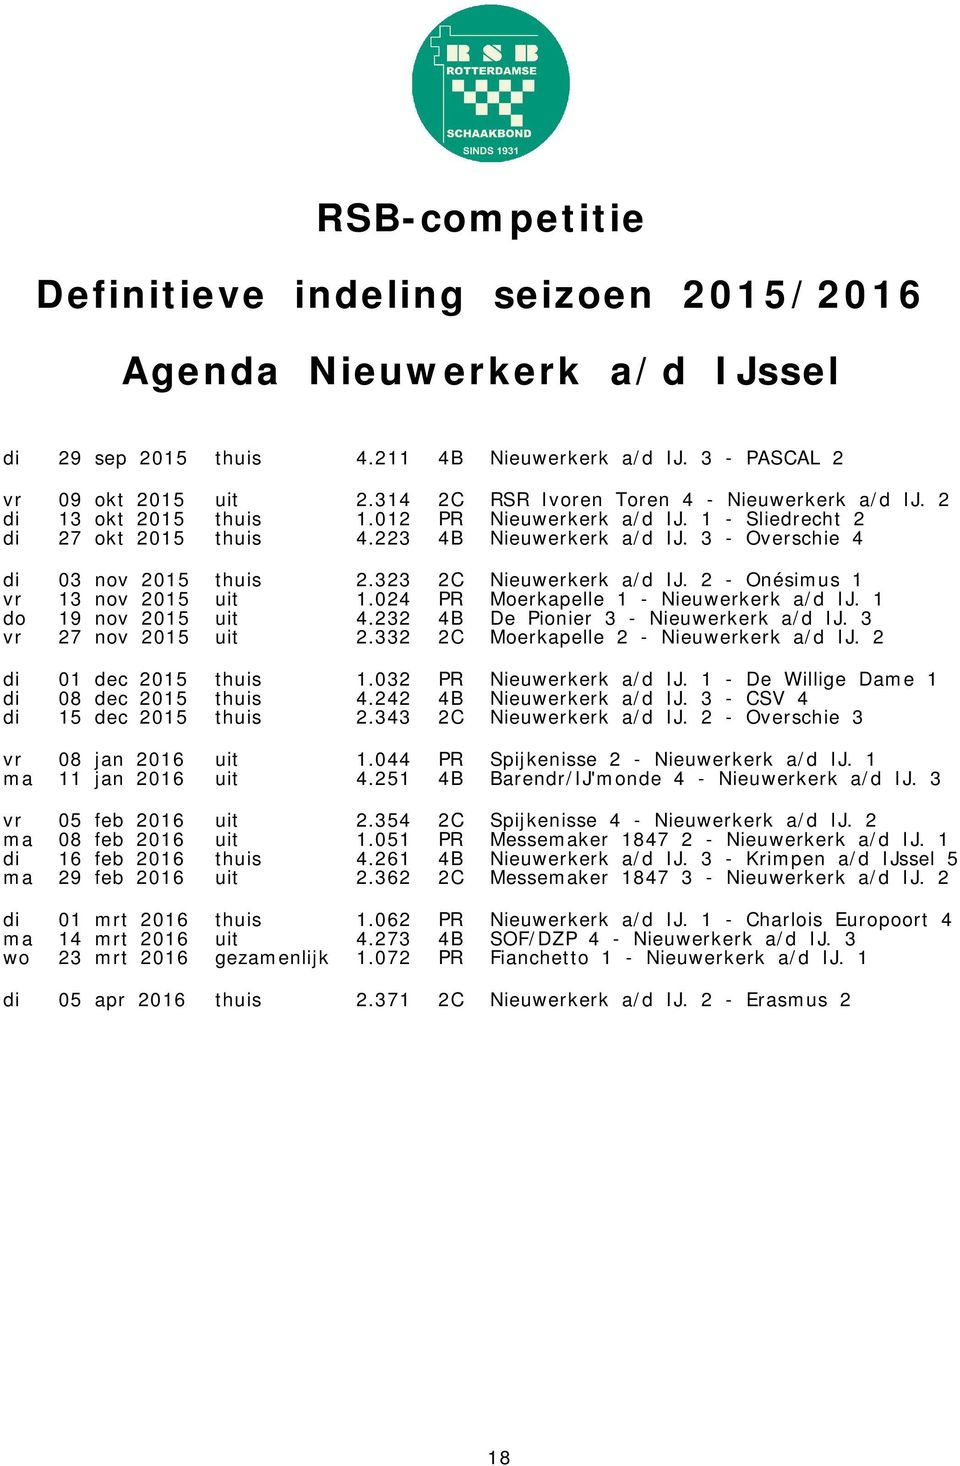 024 PR Moerkapelle 1 - Nieuwerkerk a/d IJ. 1 do 19 nov 2015 uit 4.232 4B De Pionier 3 - Nieuwerkerk a/d IJ. 3 vr 27 nov 2015 uit 2.332 2C Moerkapelle 2 - Nieuwerkerk a/d IJ. 2 di 01 dec 2015 thuis 1.